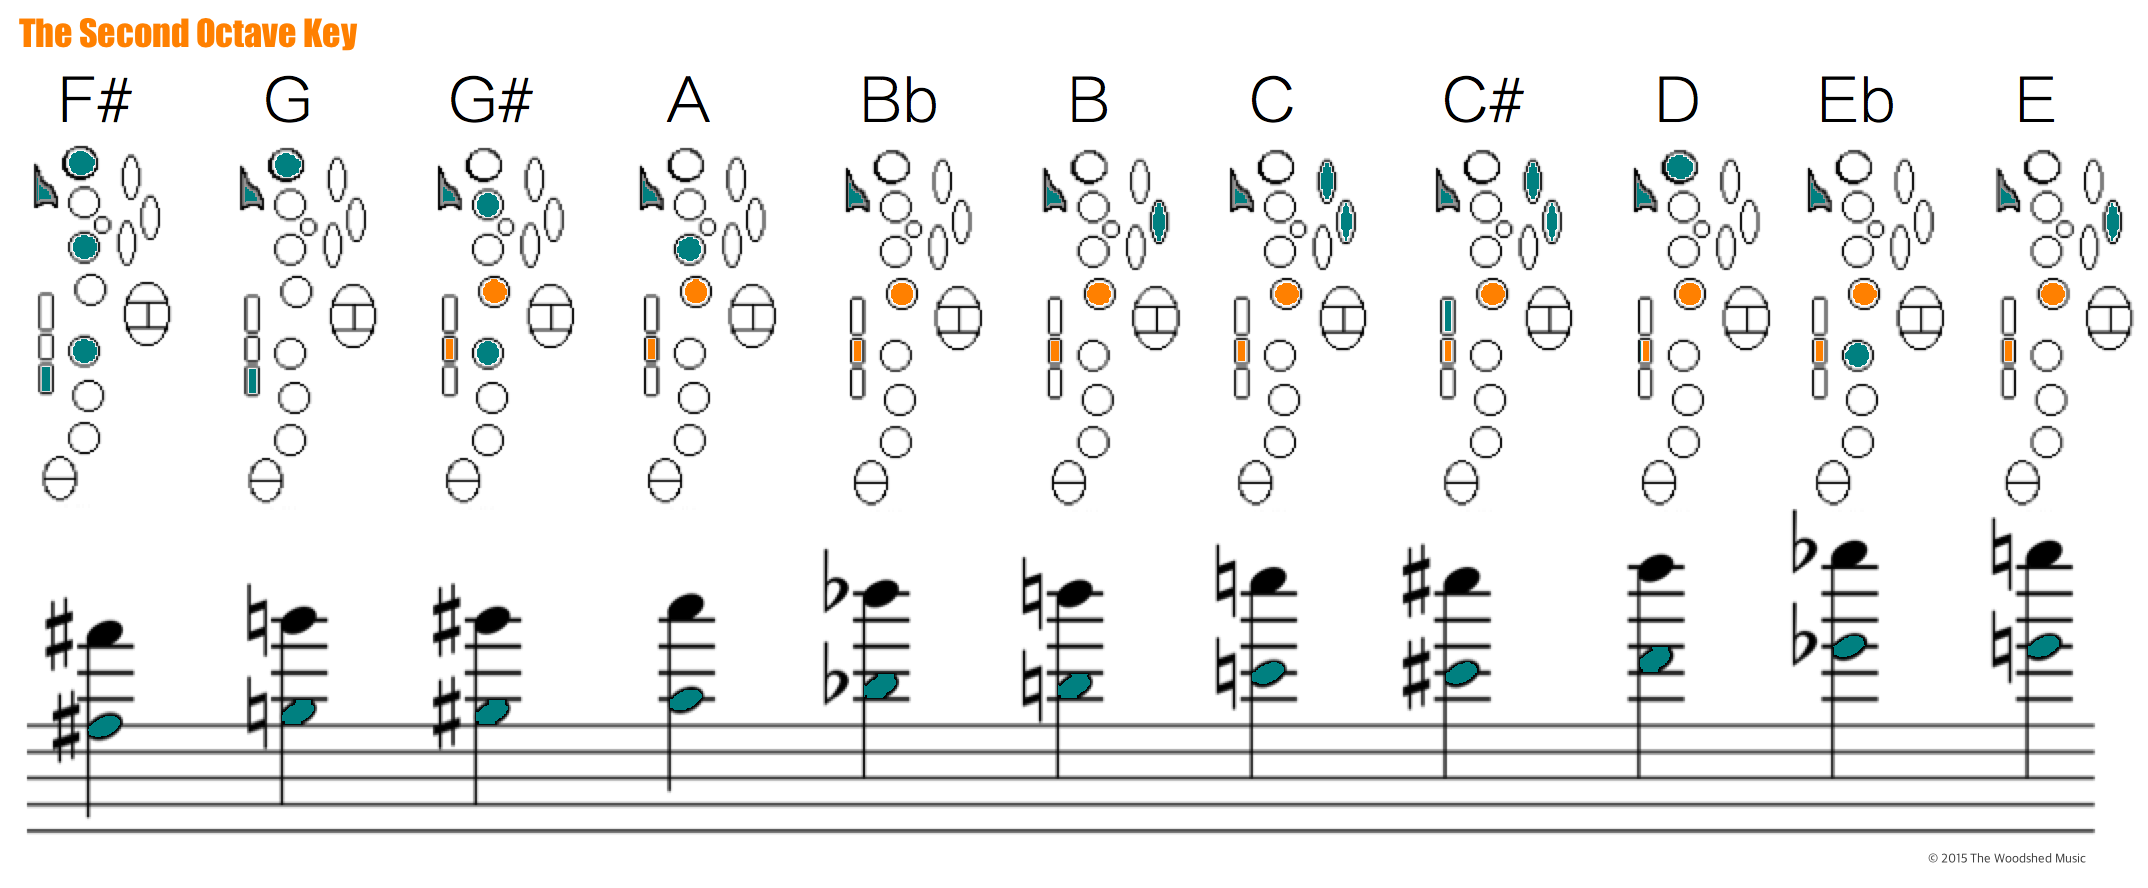 Saxophone Chart Pdf